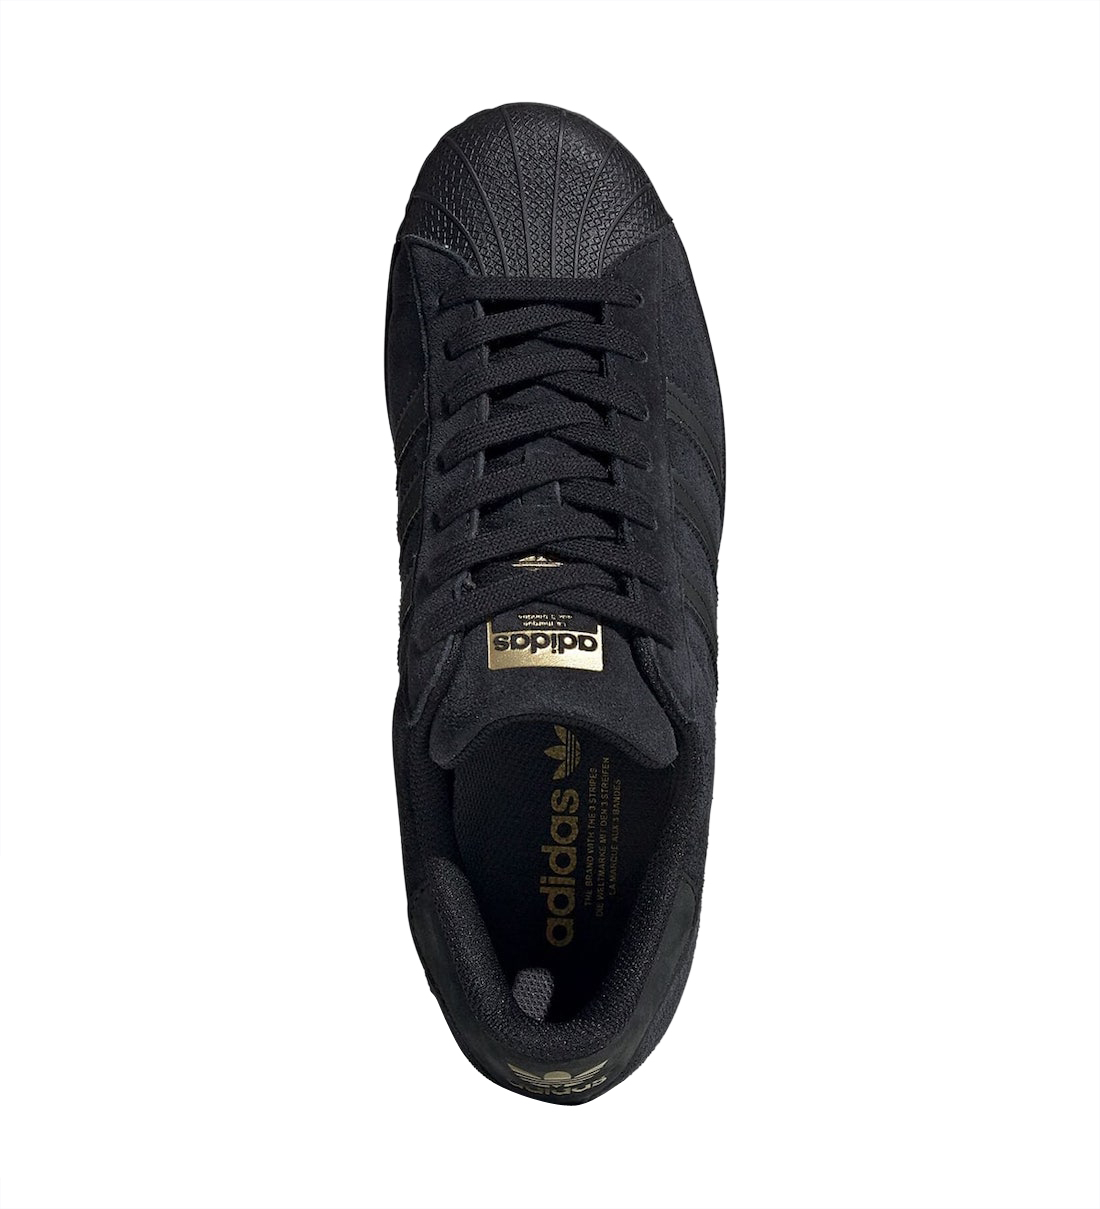 adidas Superstar Black Suede H69158